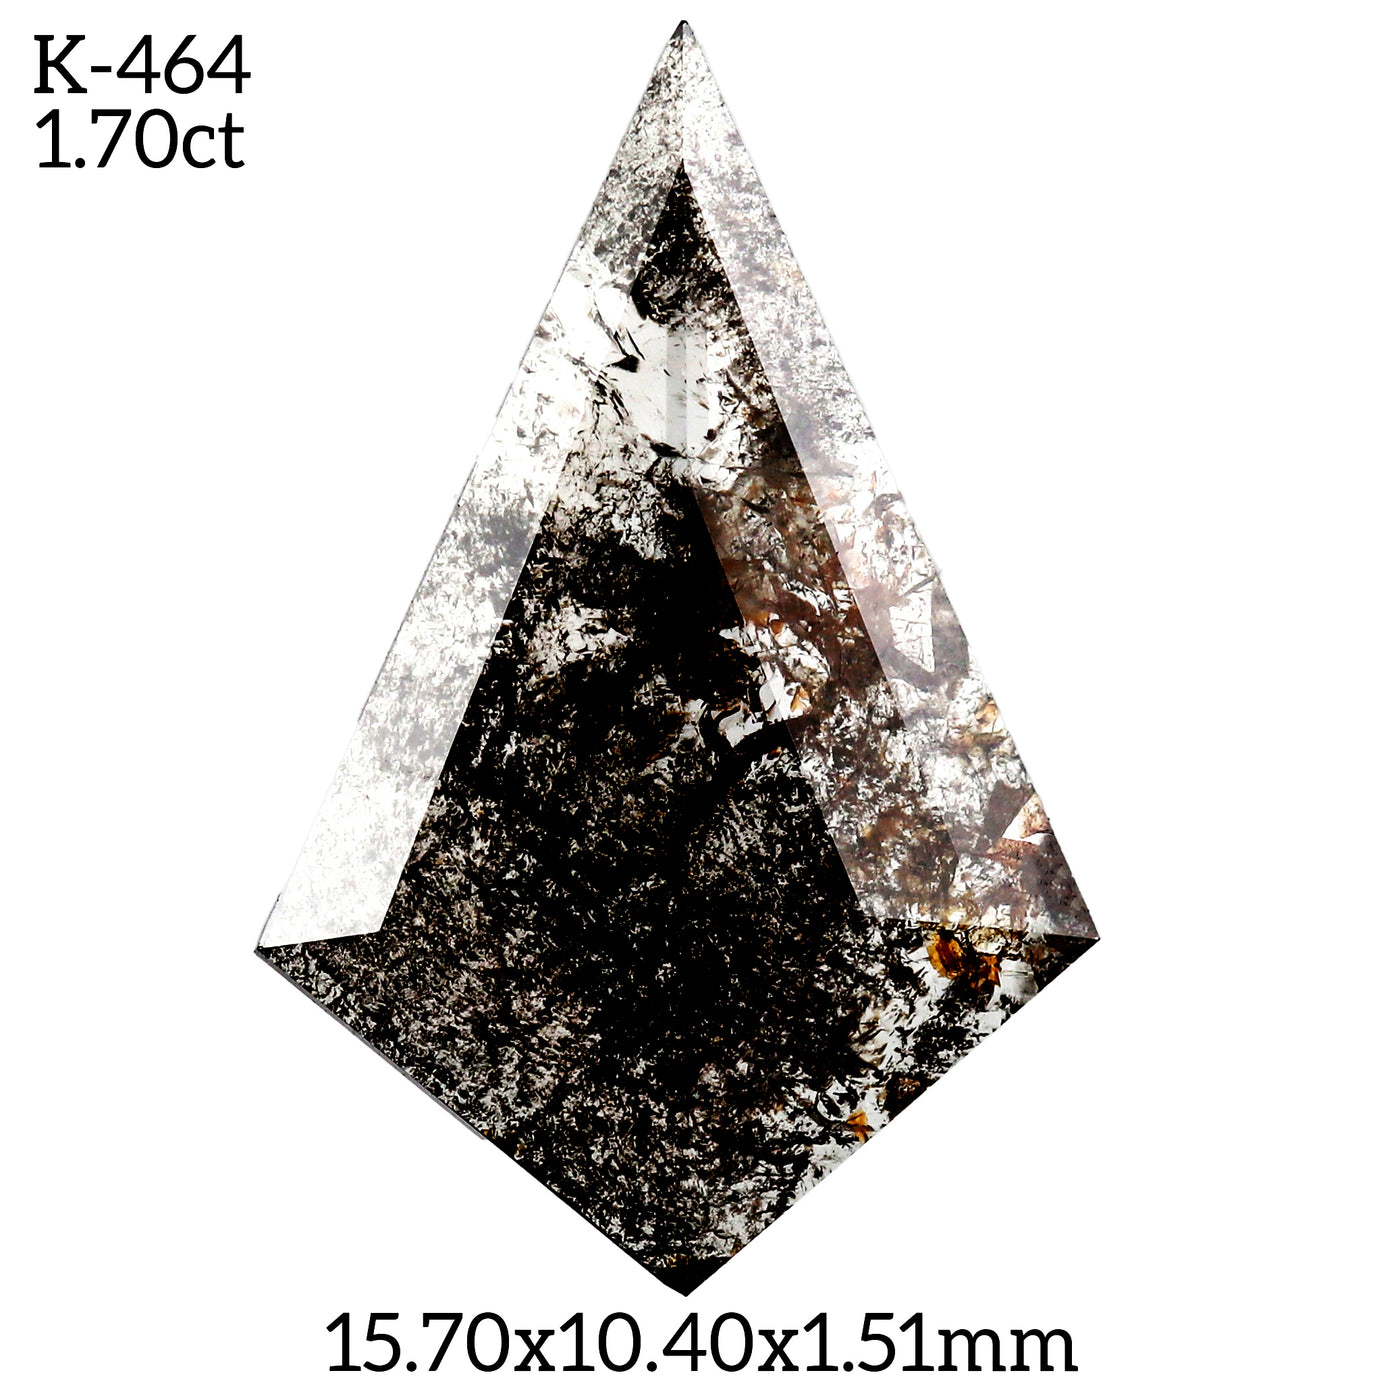 K464 - Salt and pepper kite diamond